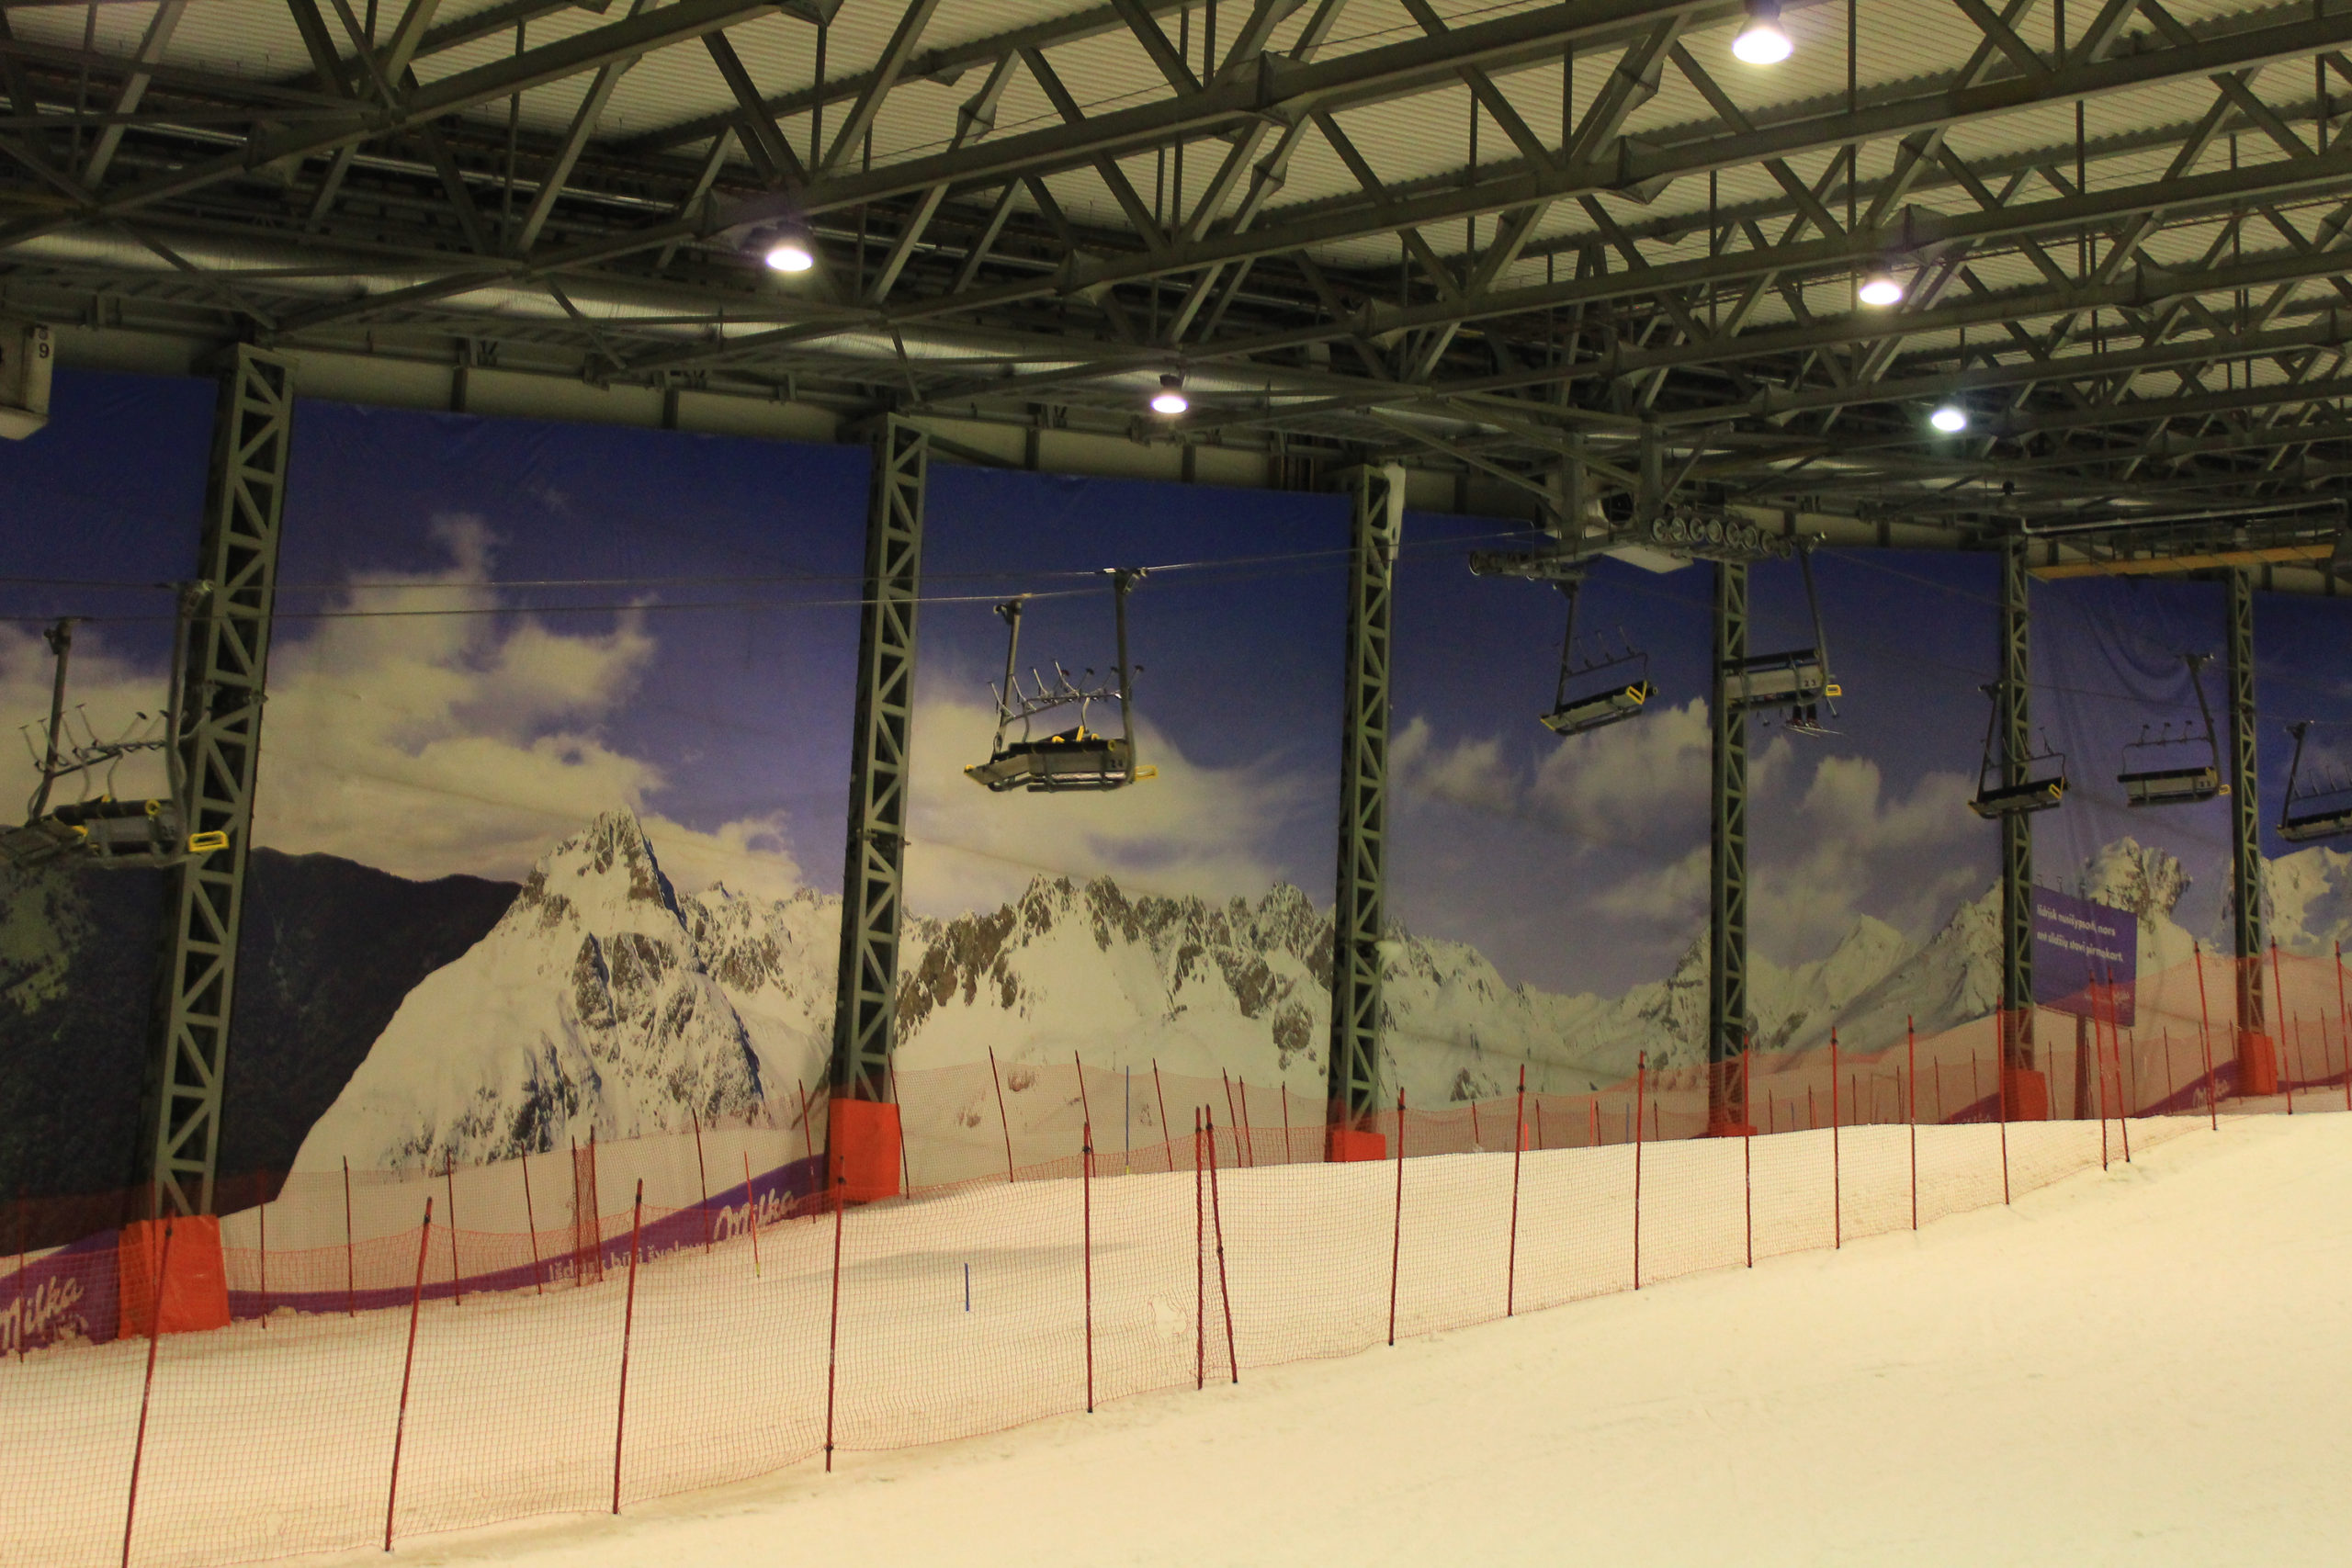 Stok narciarski na hali